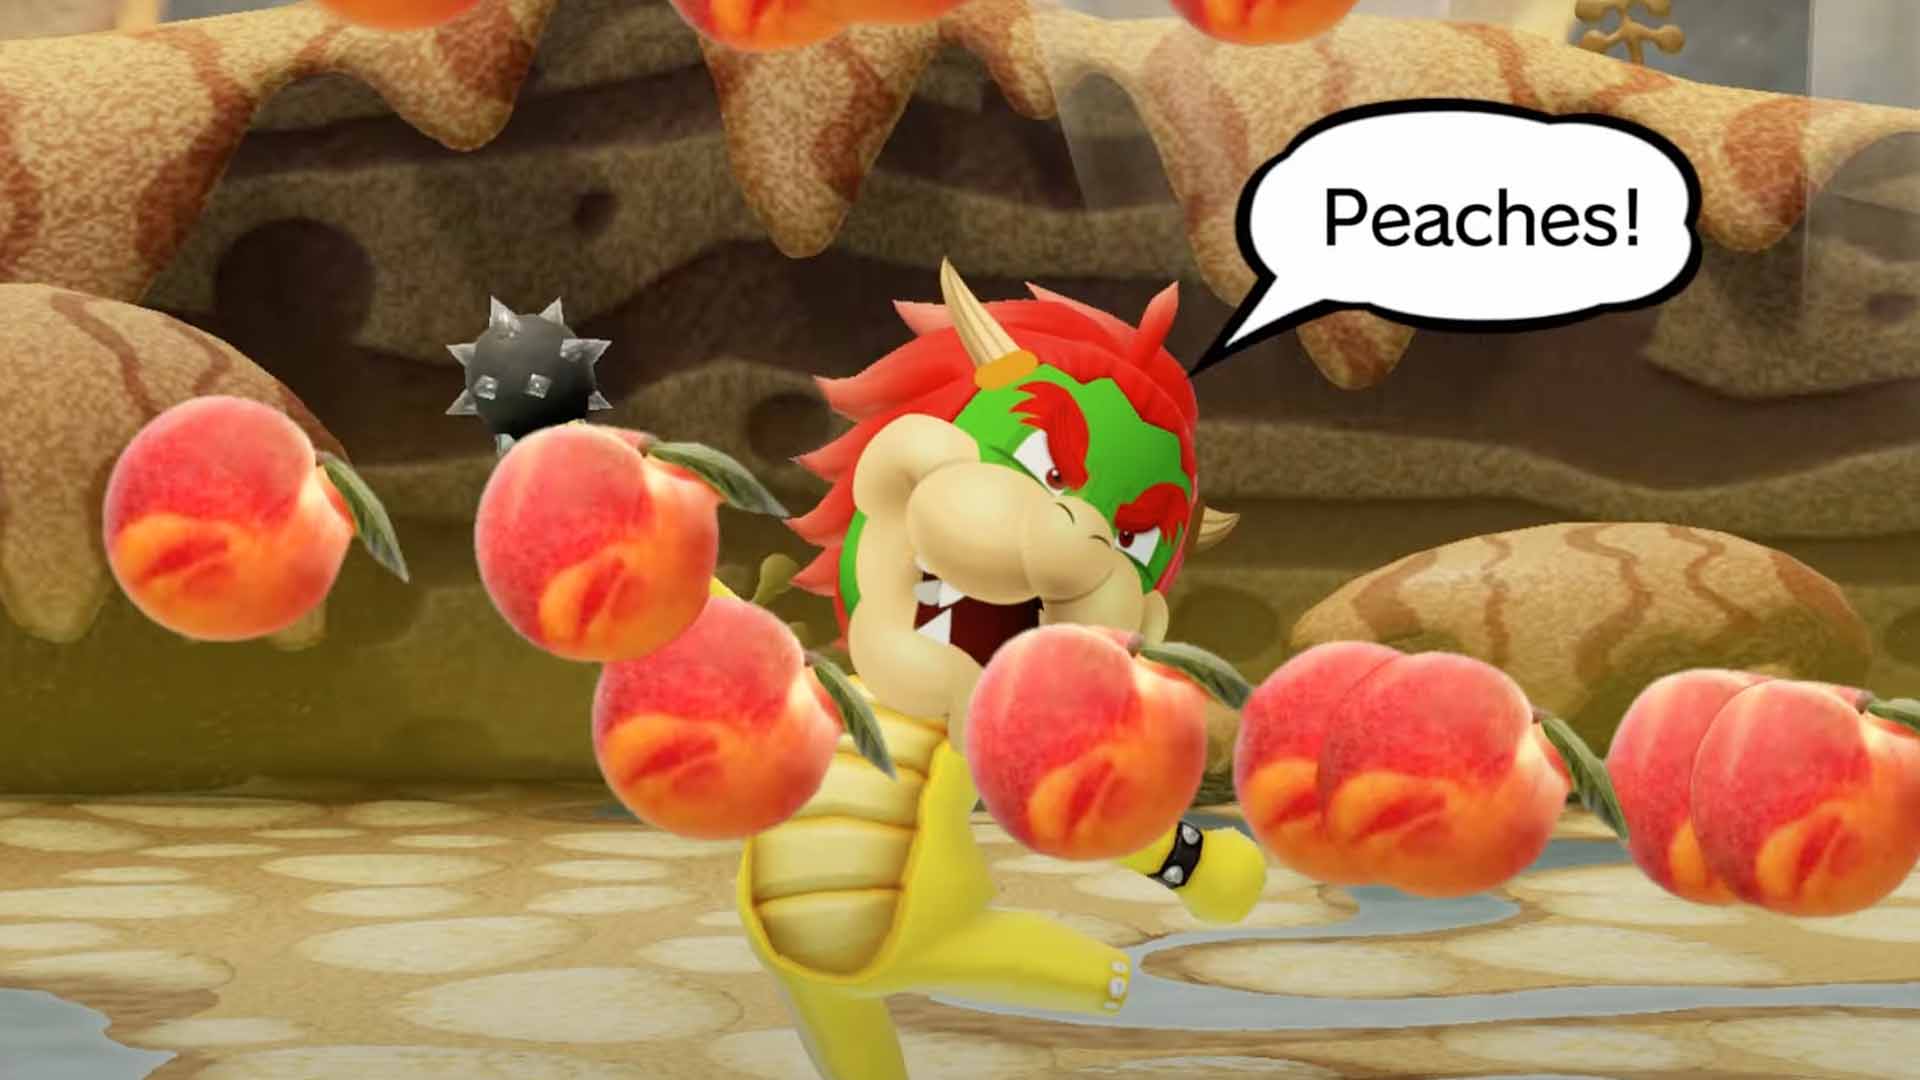 Peaches - The Super Mario Bros. Movie